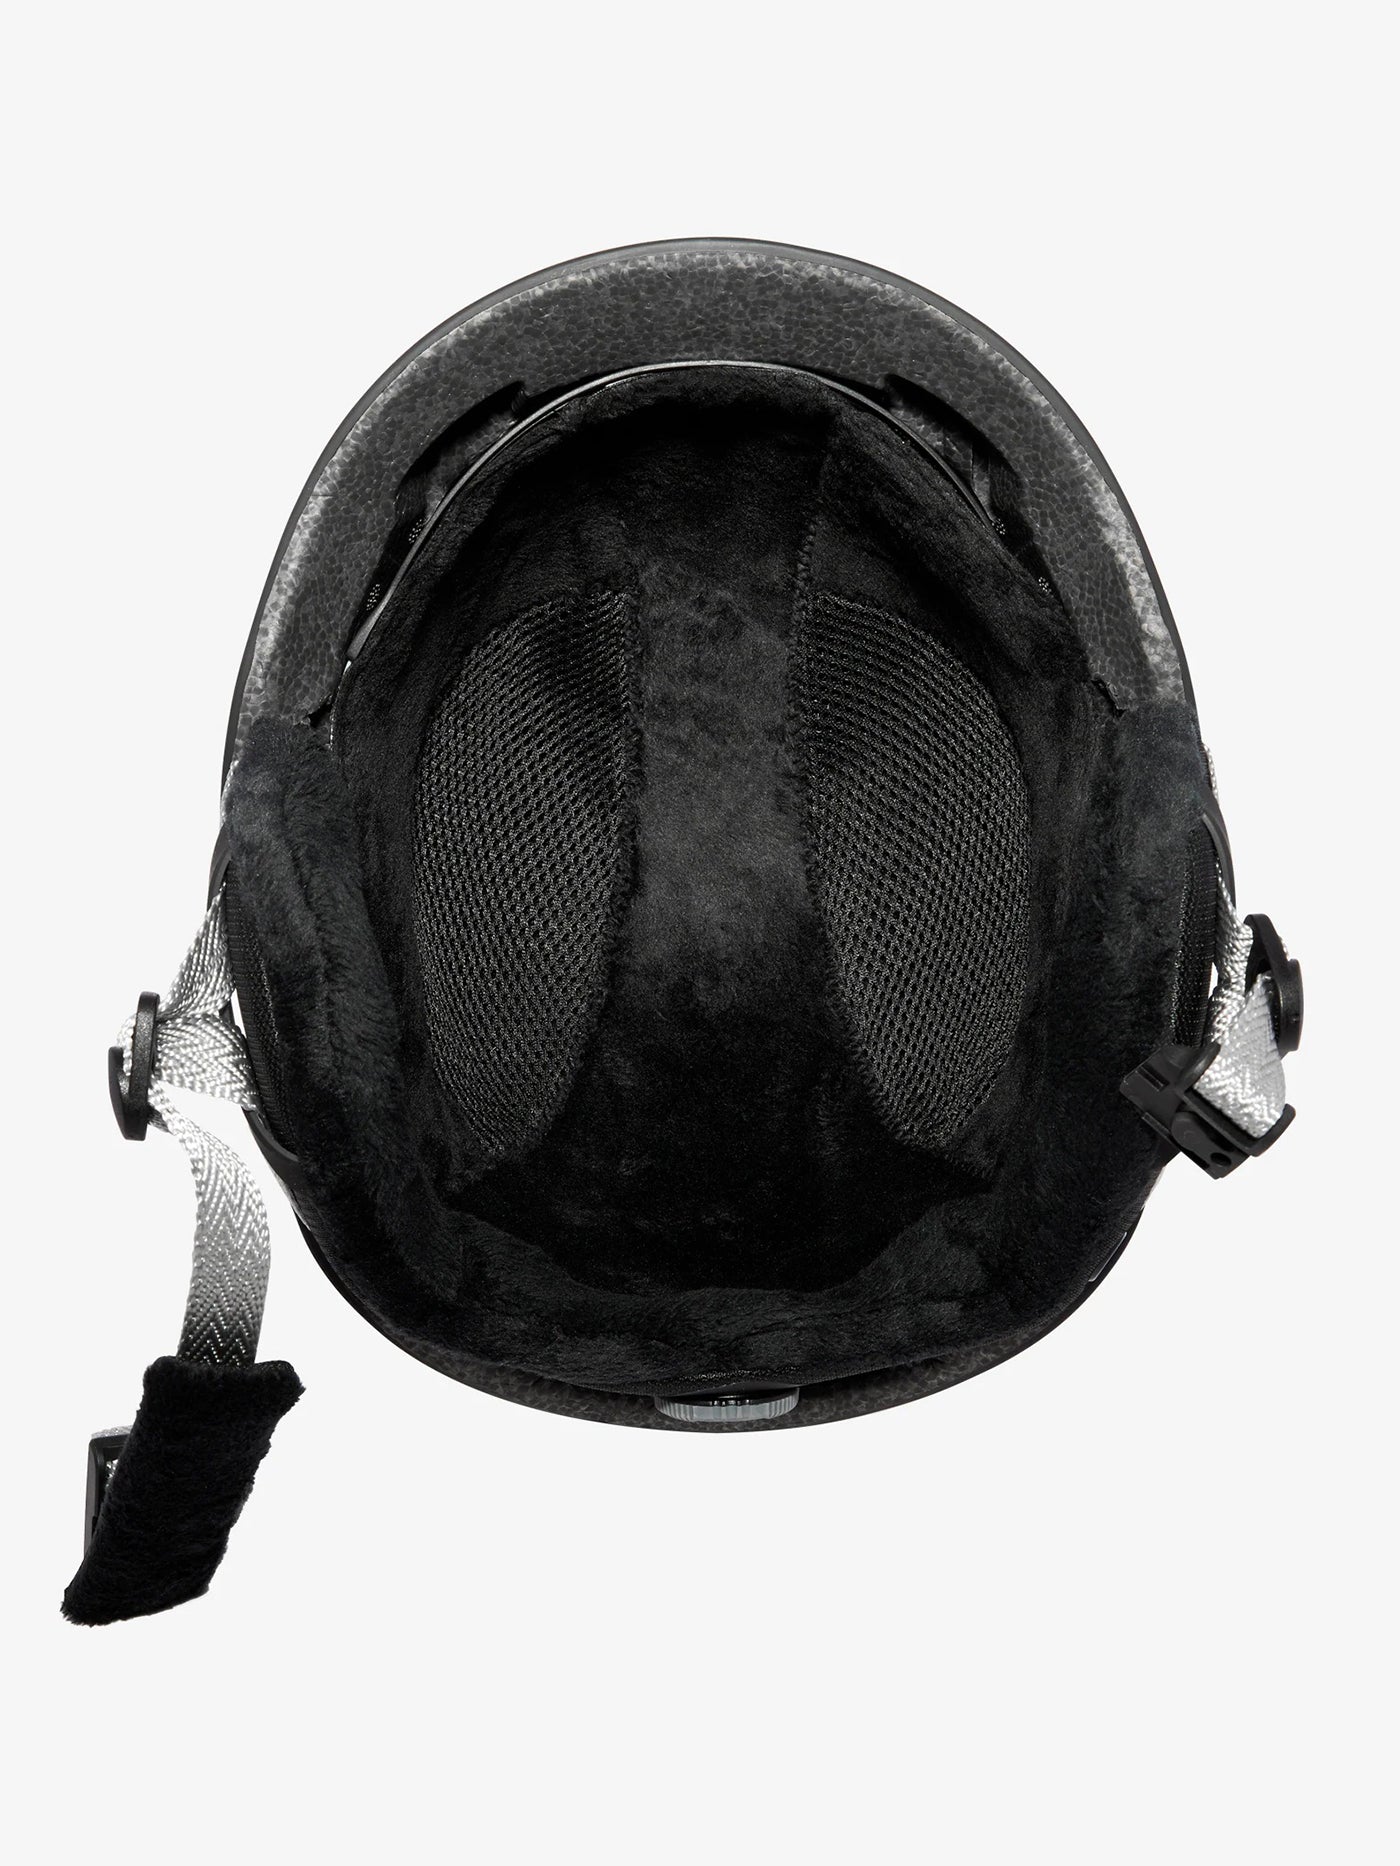 Anon Rodan MIPS Snowboard Helmet 2023